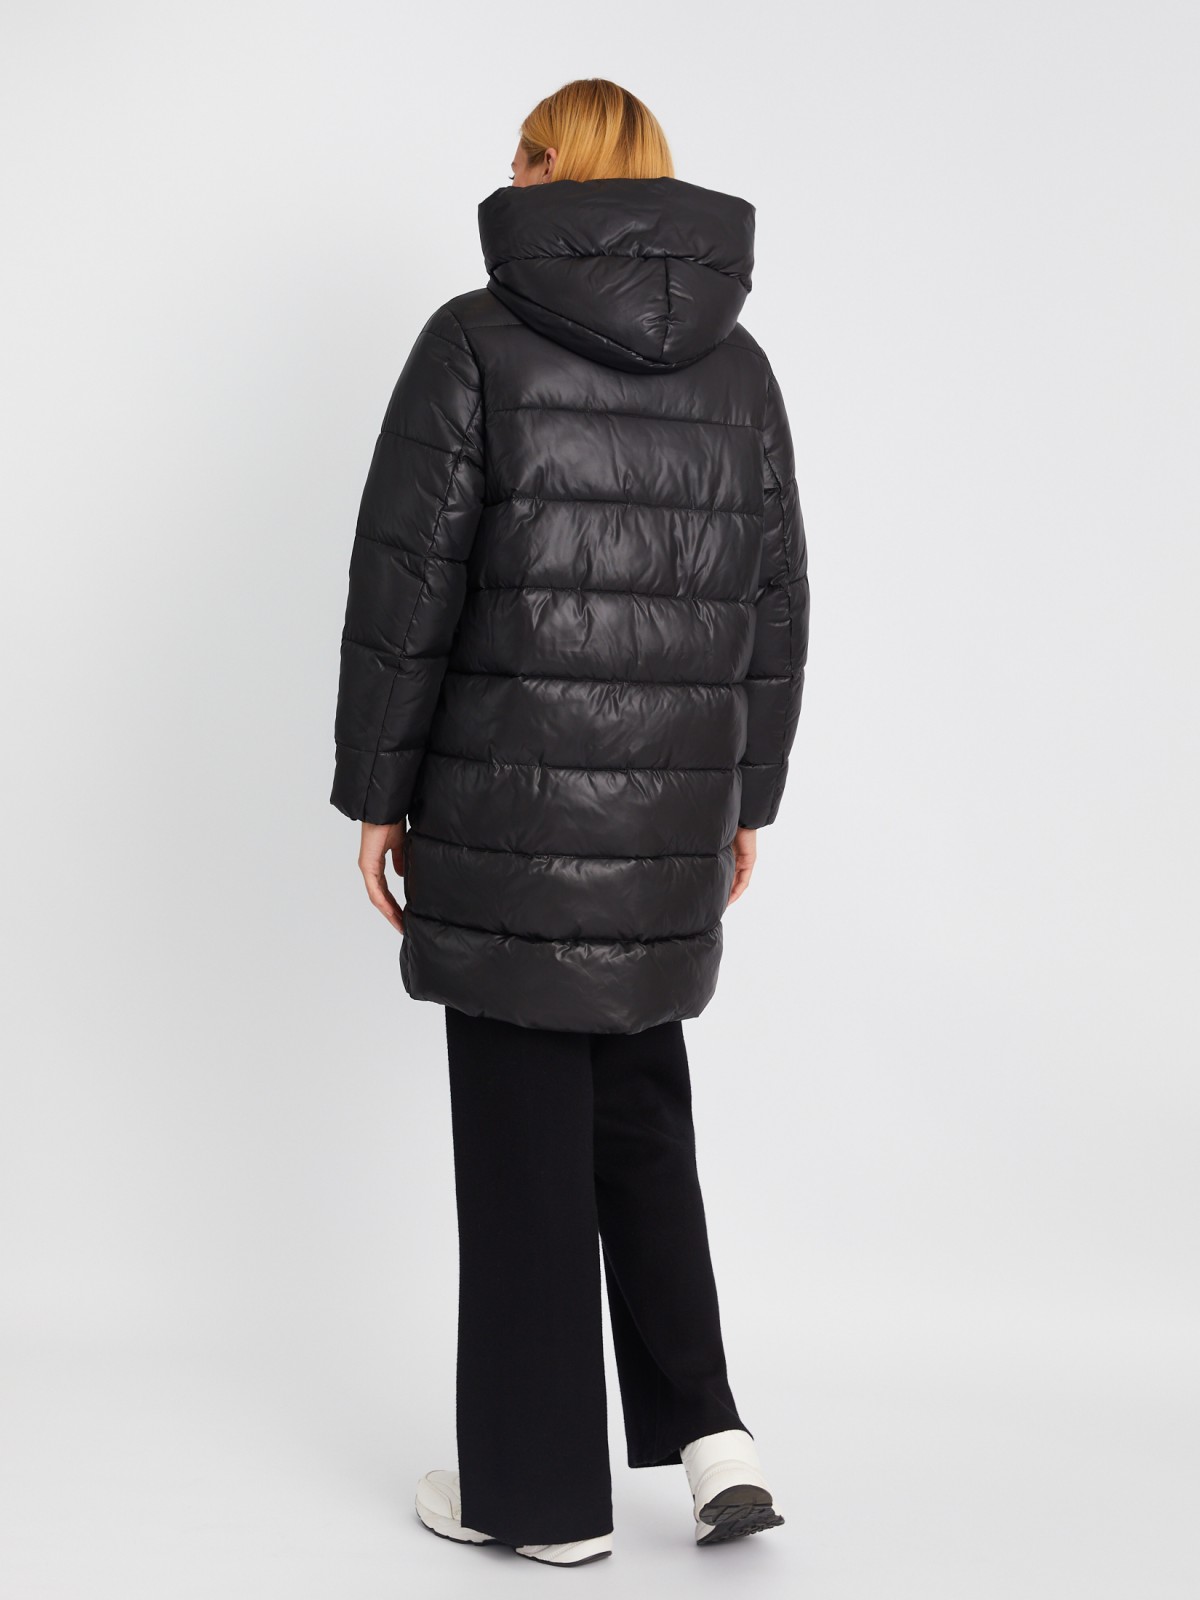 Тёплая стёганая куртка на молнии с капюшоном zolla 023345212124, цвет черный, размер XS - фото 6